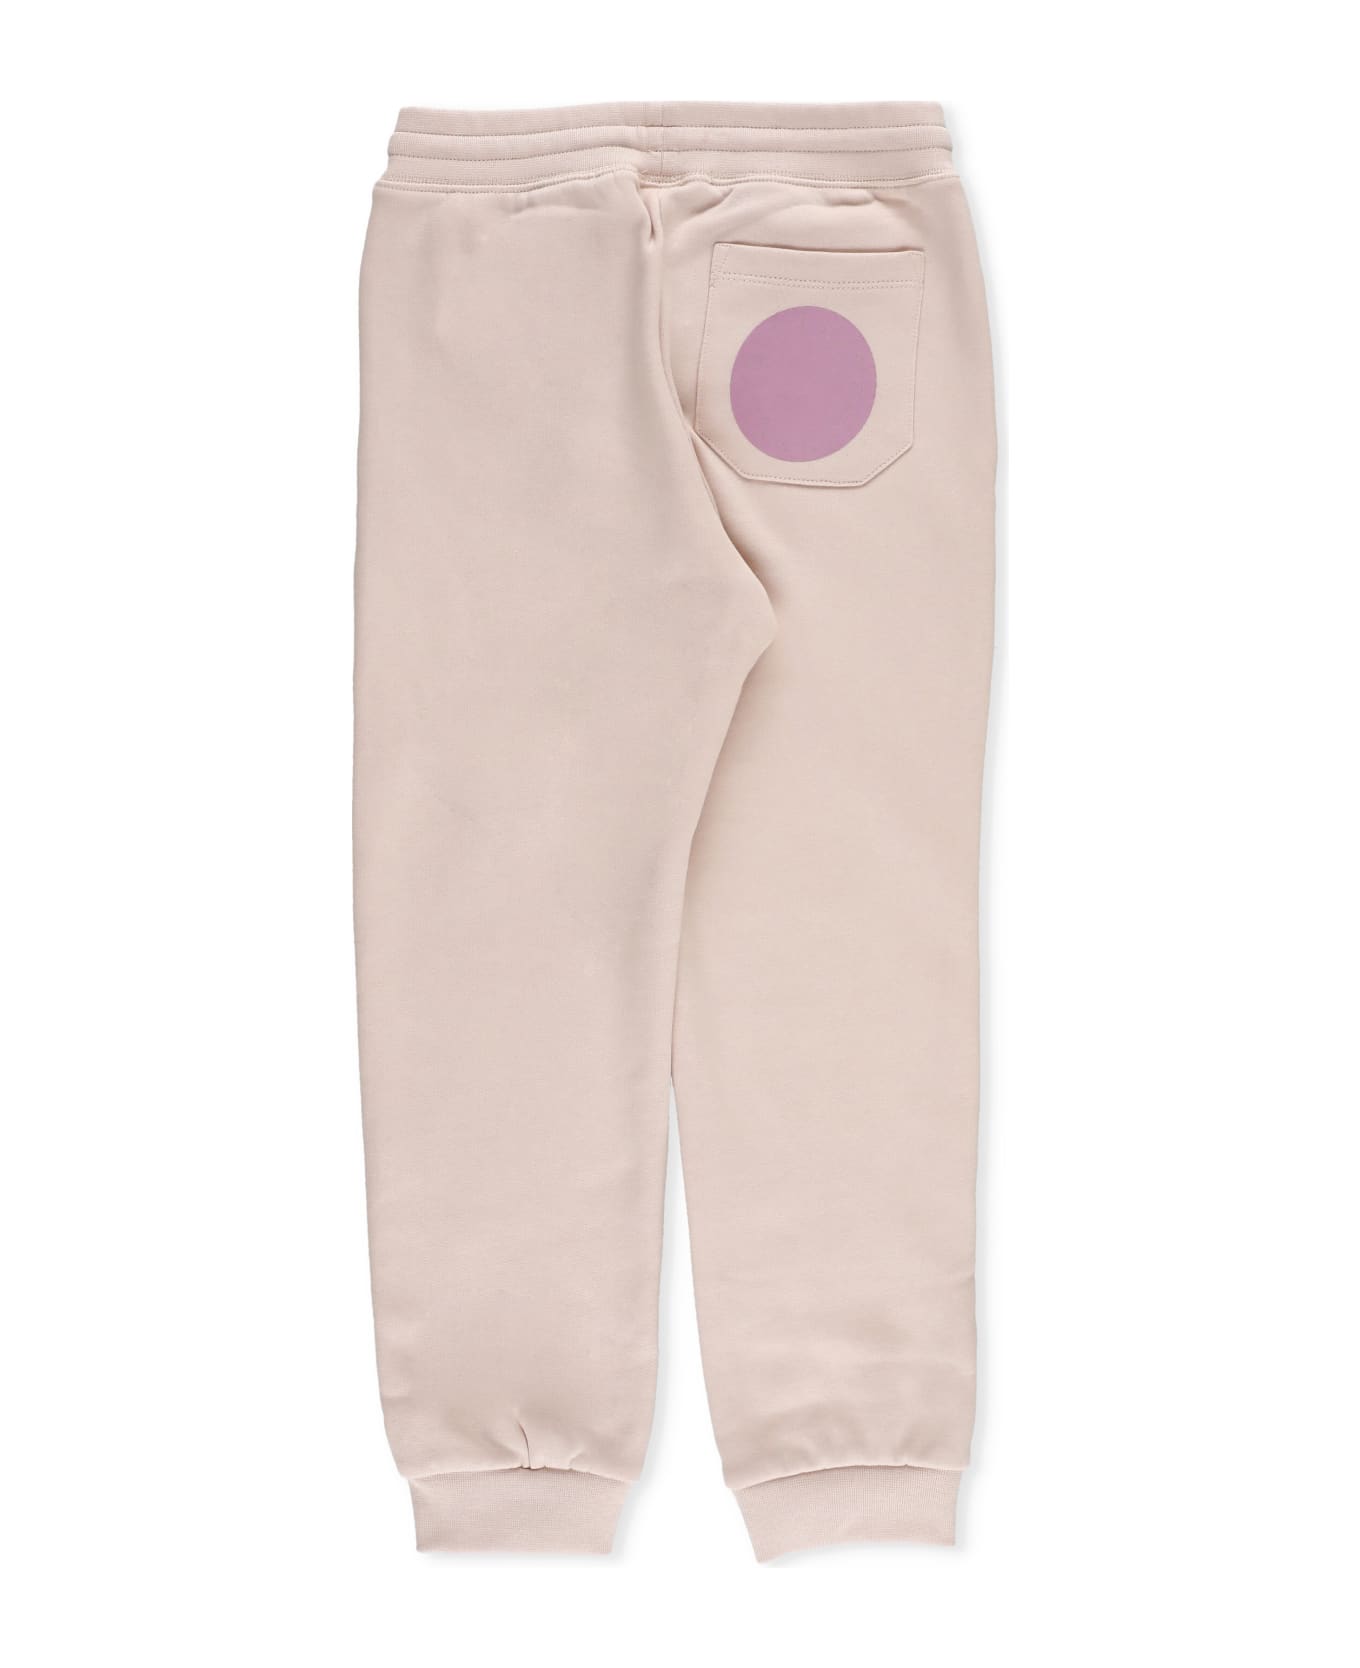 Stella McCartney Kids Cotton Sweatpants - Pink